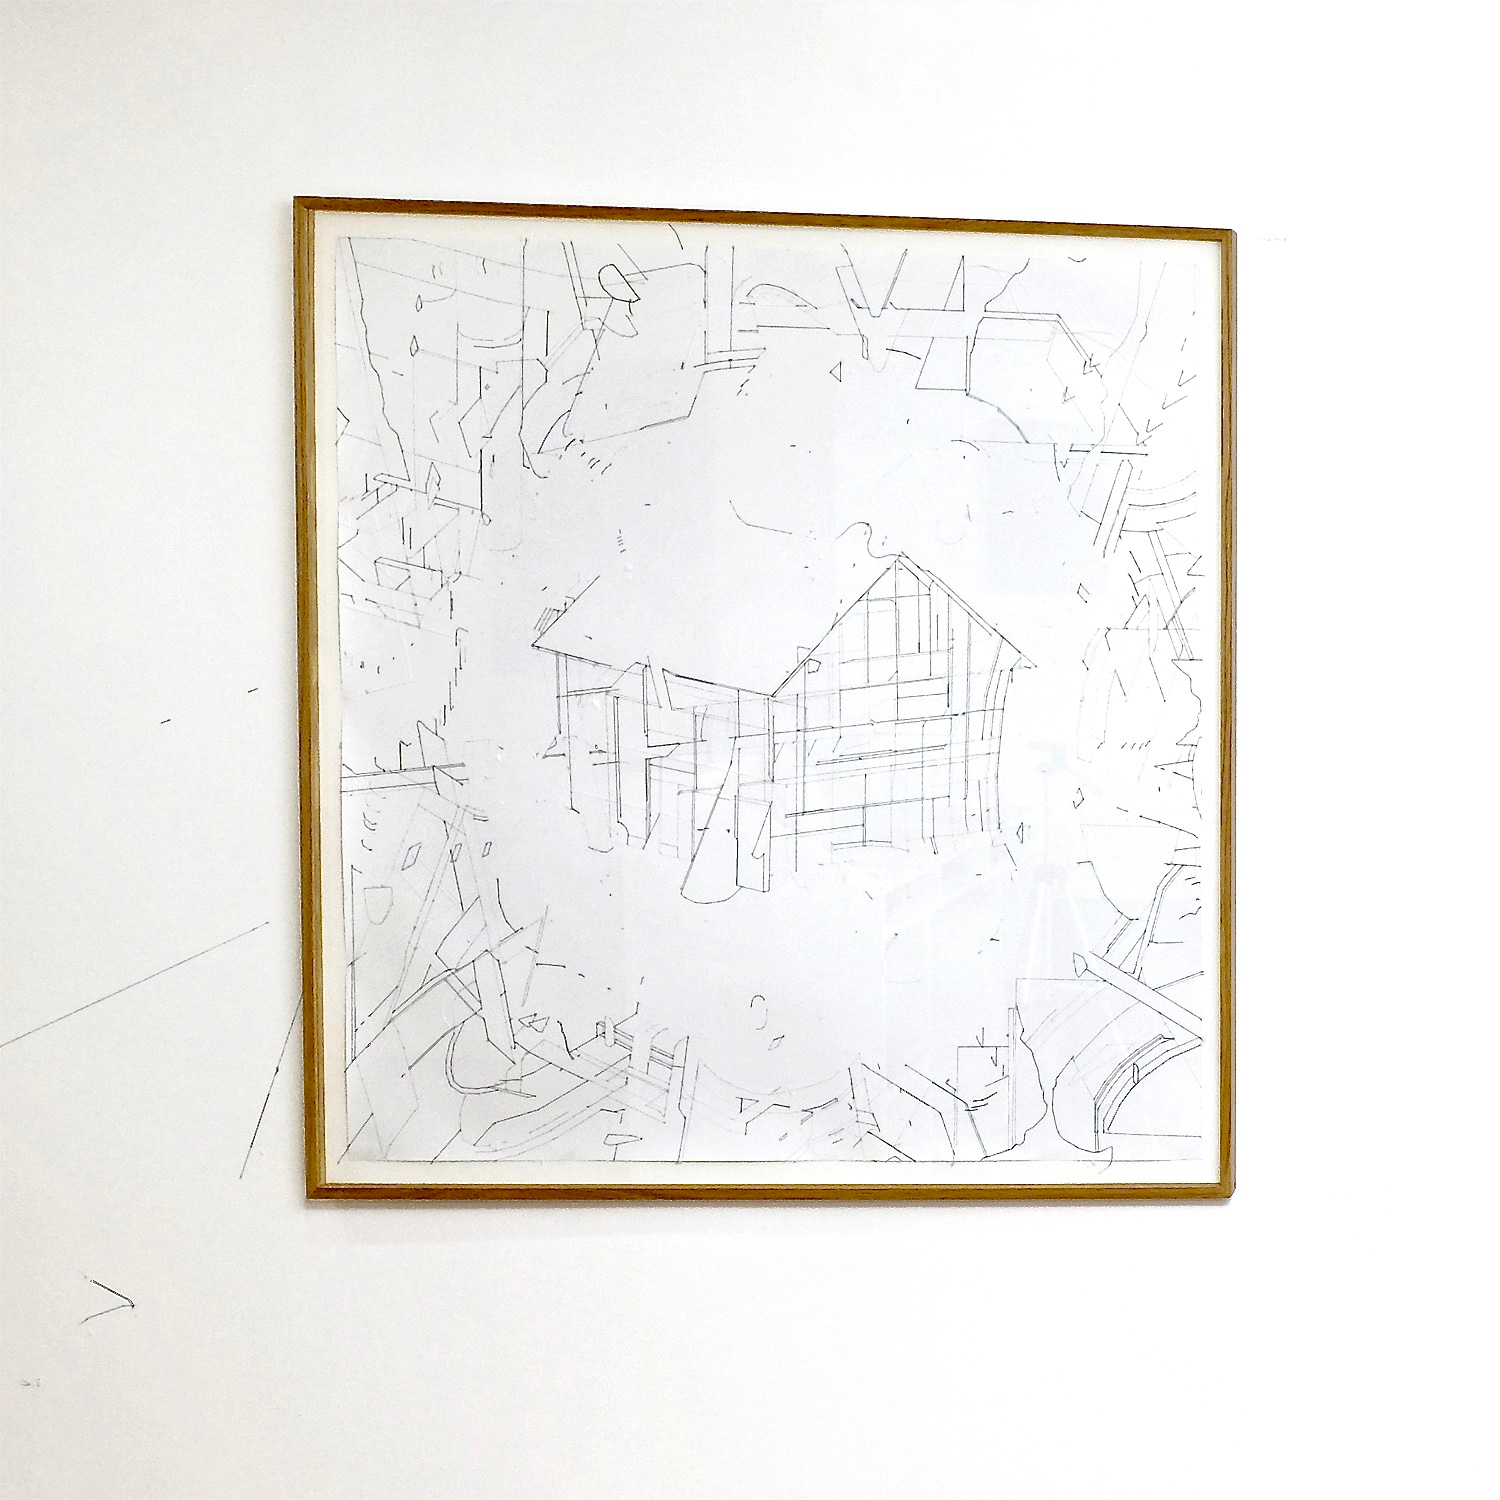   Keita Mori,  Bug Report #5 , 2015. Fil de coton et fil de soie sur papier, 84 cm x 84 cm  